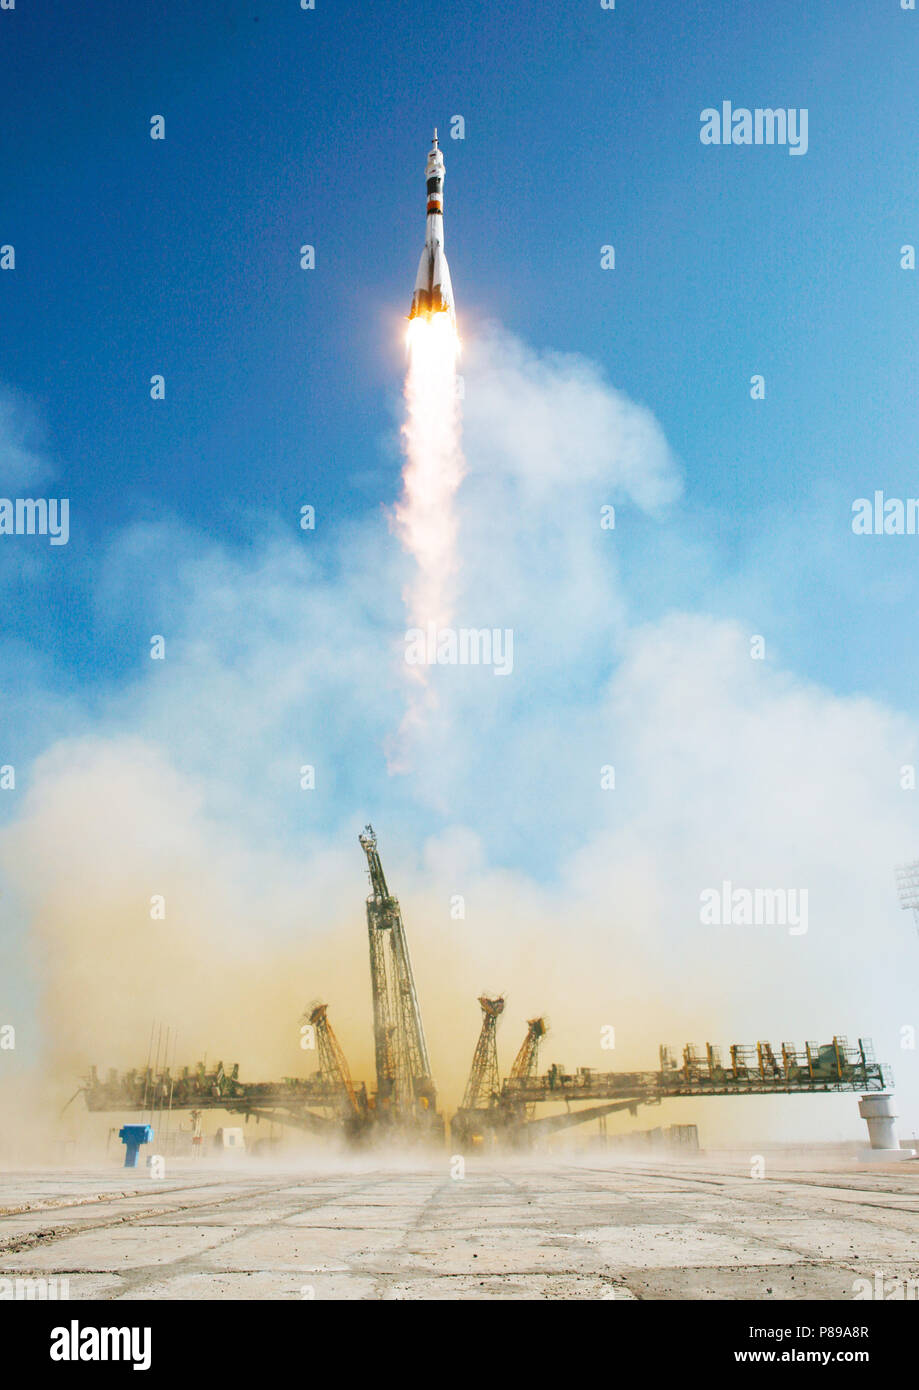 Los lanzamientos Soyuz TMA-16 desde el cosmódromo de Baikonur en Kazajstán el miércoles, 30 de septiembre de 2009, llevando Expedition 21 El ingeniero de vuelo Jeffrey N. Williams, el ingeniero de vuelo Maxim Suraev y Guy Laliberté participante de Vuelos Espaciales a la Estación Espacial Internacional. (Crédito de la imagen: NASA/Bill Ingalls) Foto de stock